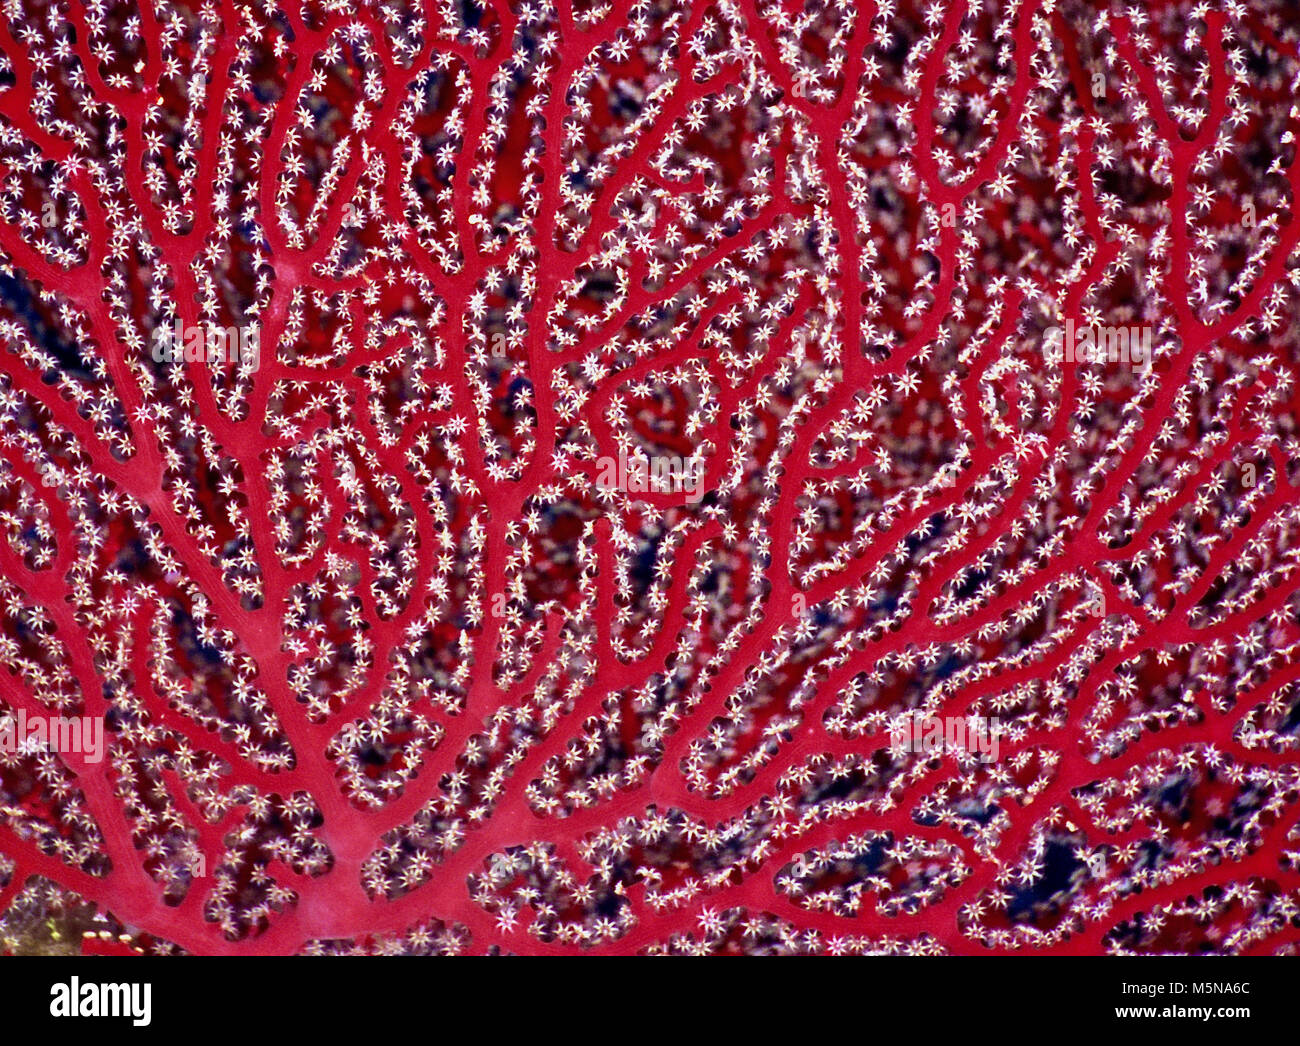 Questo è un ritratto di close-up di parte di un rosso corallo gorgonia (Acabaria splendens). Le sue centinaia di otto-tentacled polipi sono completamente esteso al fine di catturare microplankton. Ho la sensazione che questa colonia di minuscoli animali delicati, che vivono nel loro scheletro comunali, serve a illustrare la estrema fragilità e la bellezza delle foreste tropicali e sub-tropicali le barriere coralline. Purtroppo, tali barriere coralline stanno morendo. Essi sono i più vulnerabili del nostro pianeta e degli ecosistemi hanno una capacità molto limitata di adattarsi alle crescenti temperature acqua e acidificazione. Come tali, essi sono indicatori chiave del cambiamento climatico. Mar Rosso egiziano Foto Stock